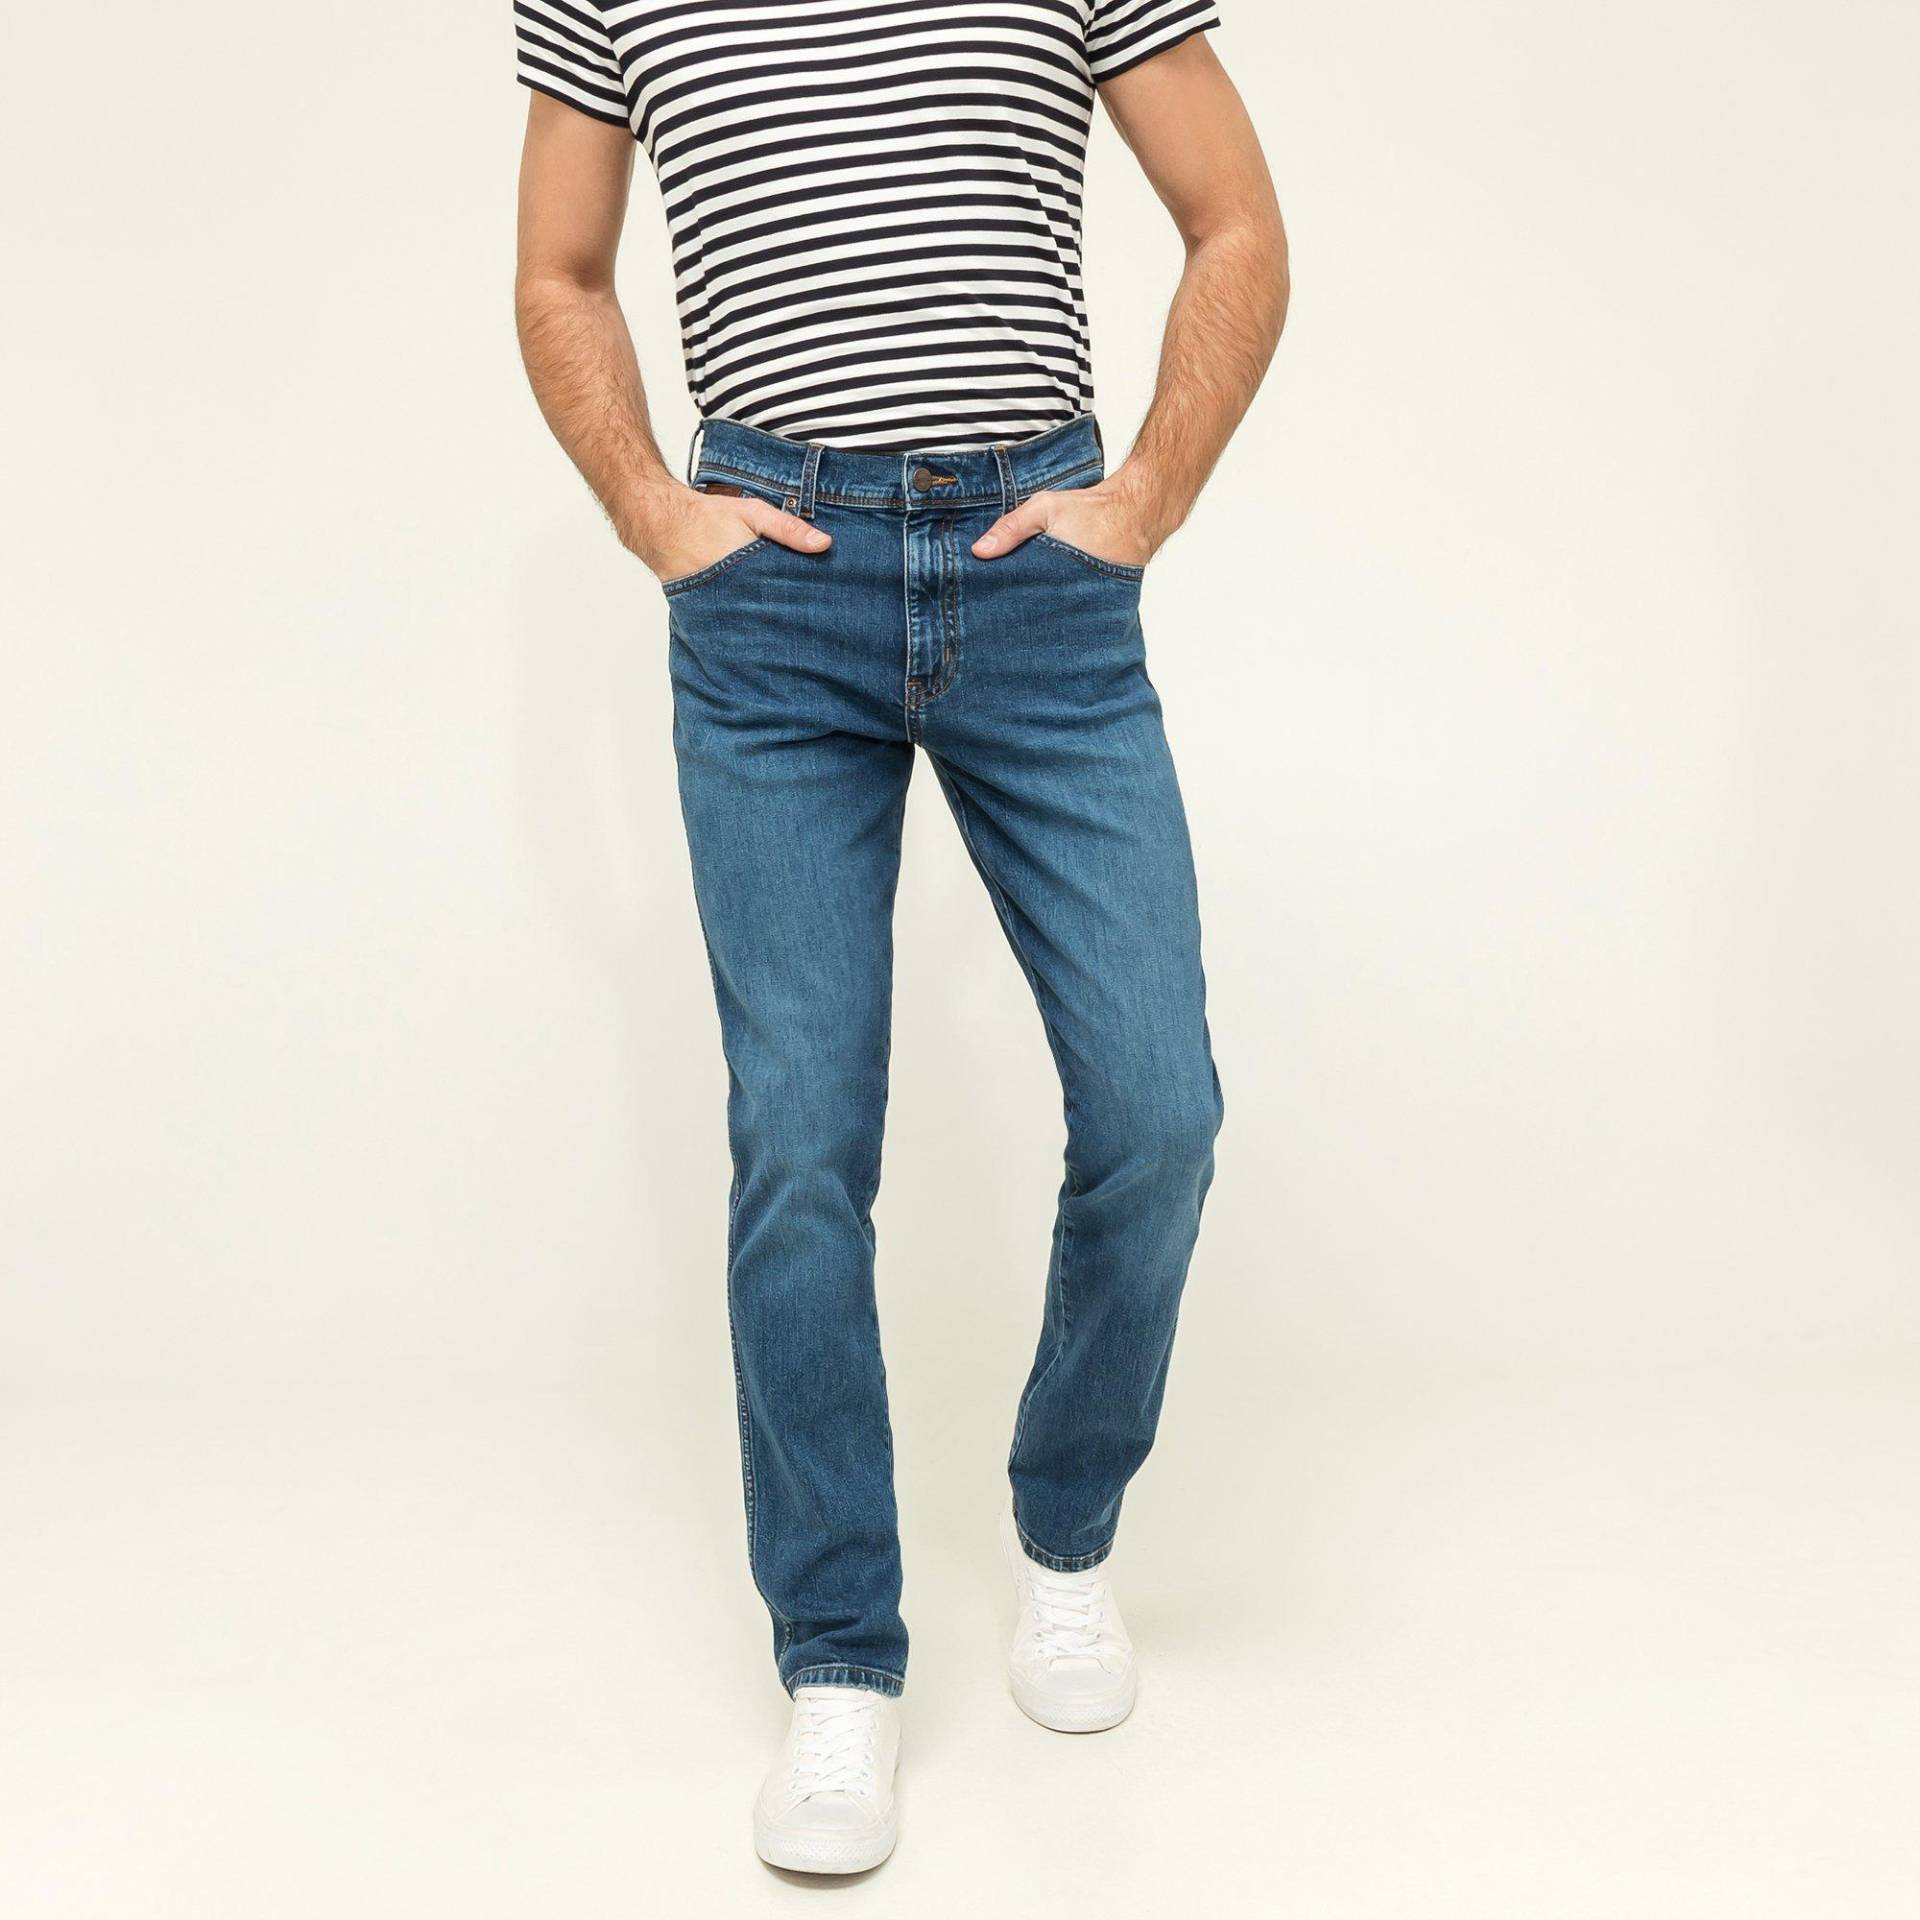 Jeans, Slim Fit Herren Blau Denim L32/W31 von Wrangler